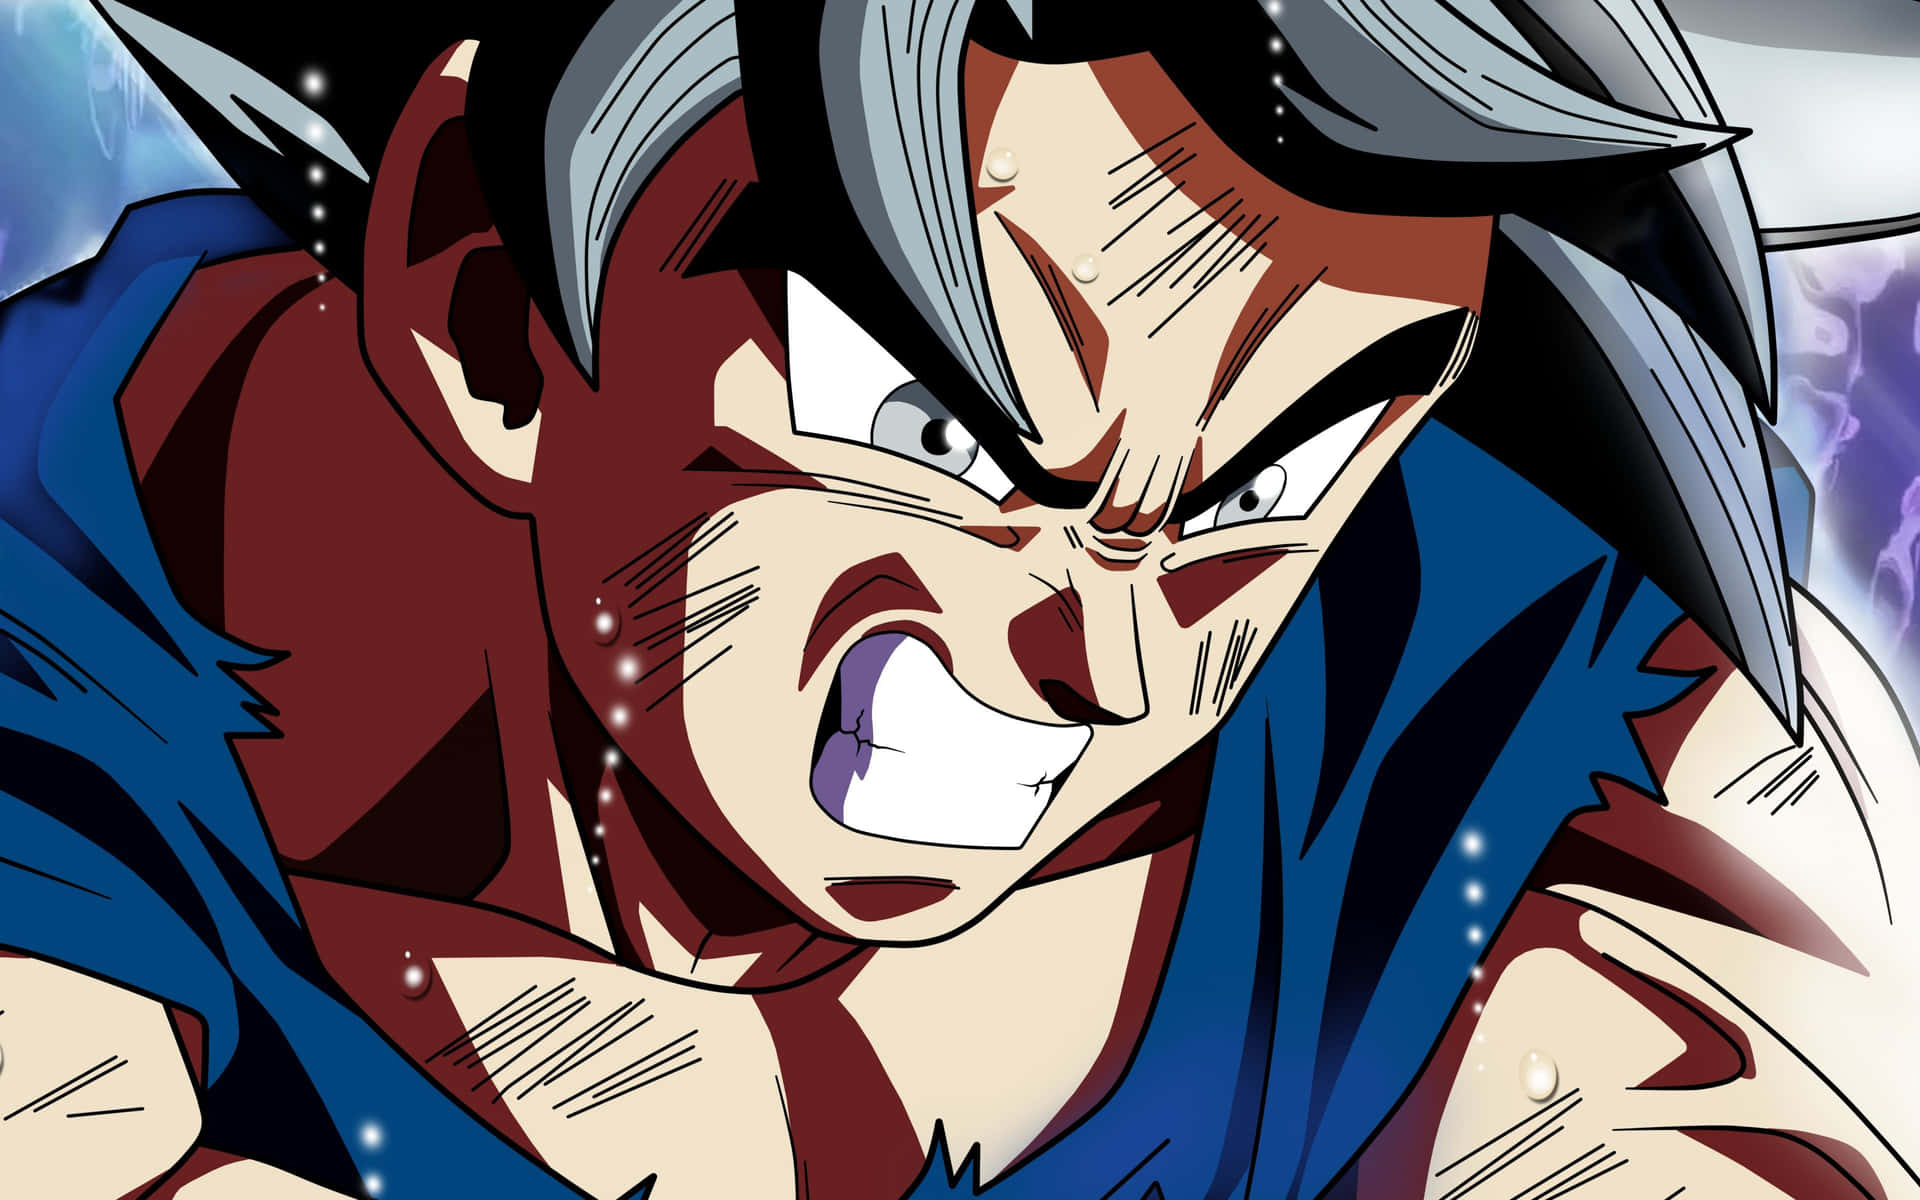 Goku,der Protagonist Von Dragon Ball, Bereitet Sich Auf Den Kampf Vor. Wallpaper